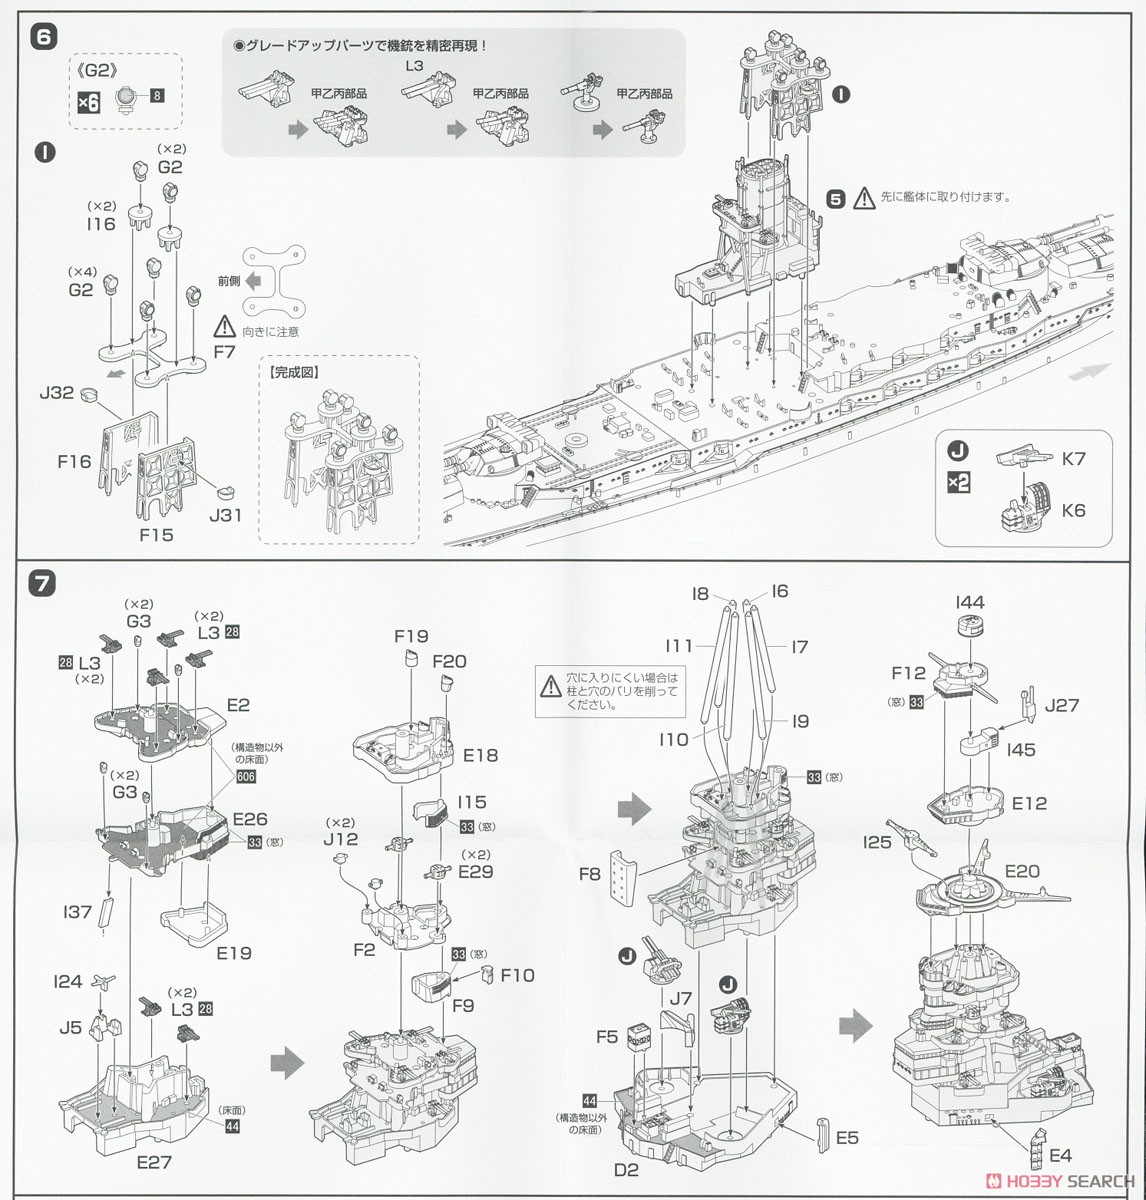 日本海軍戦艦 陸奥 フルハルモデル (プラモデル) 設計図4